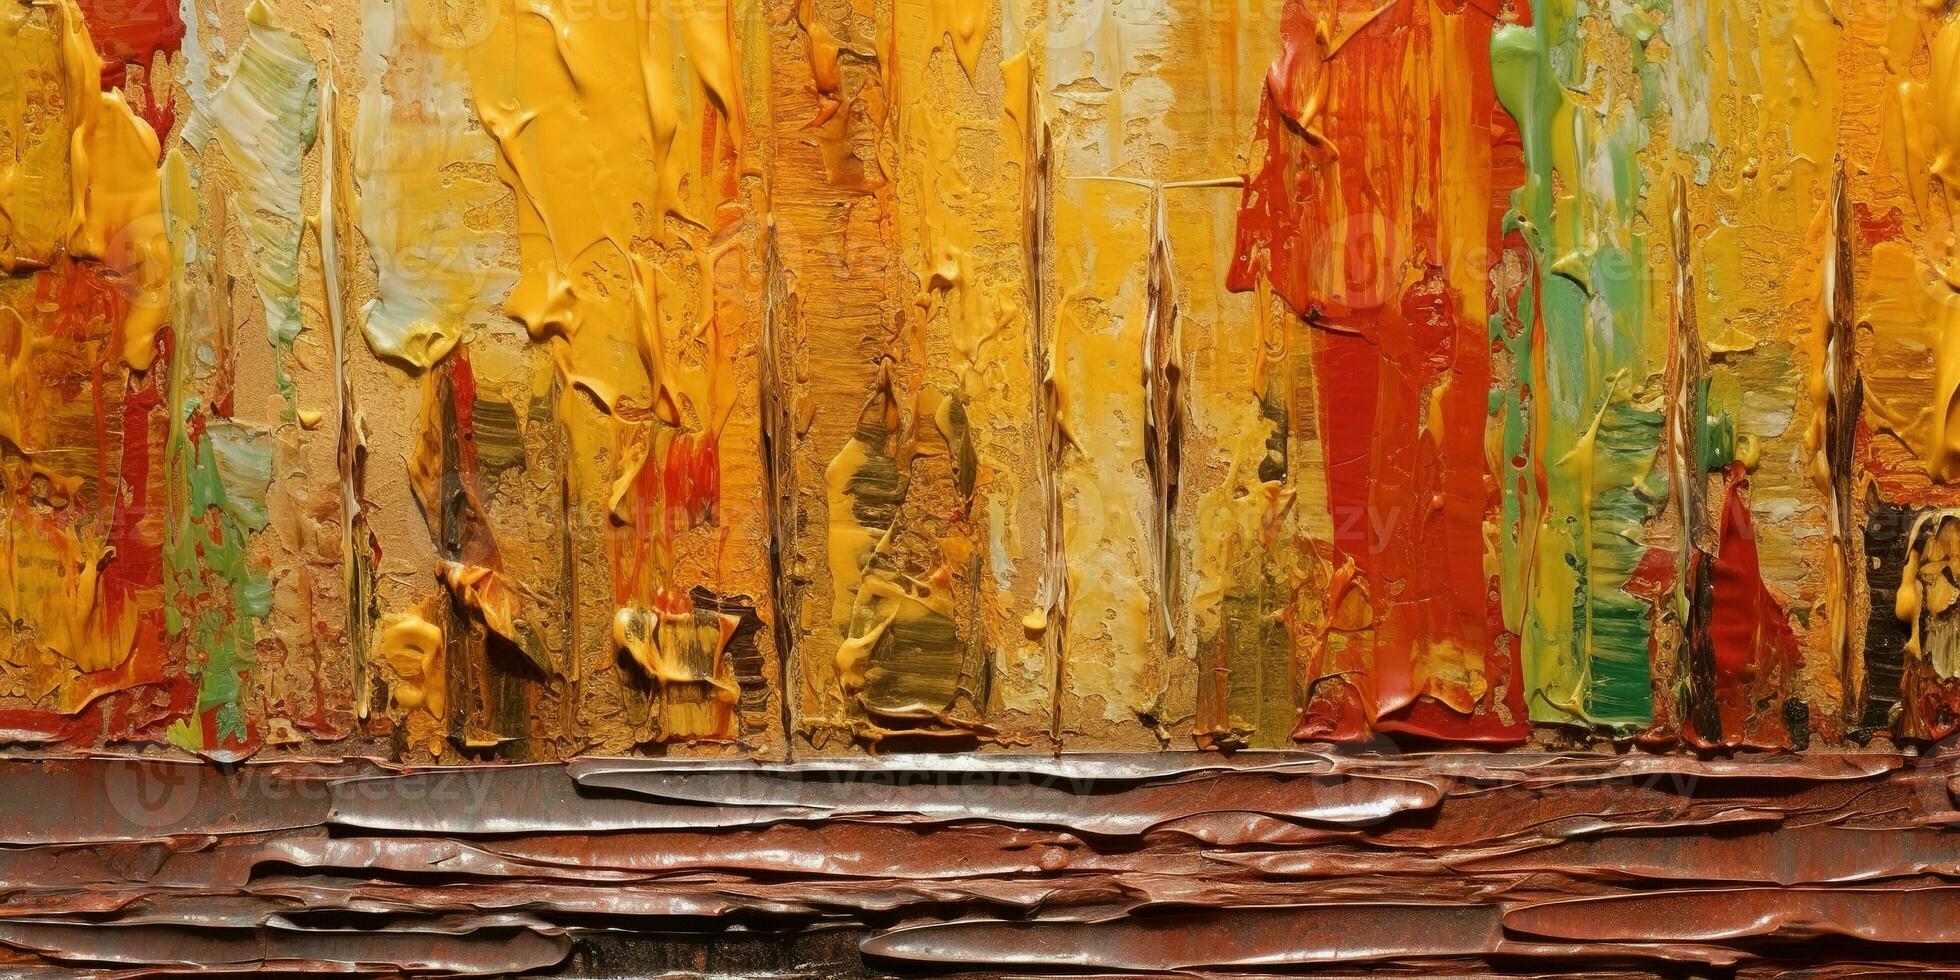 generatief ai, detailopname van impasto abstract ruw herfst kleuren kunst schilderij textuur, oranje vallen achtergrond foto